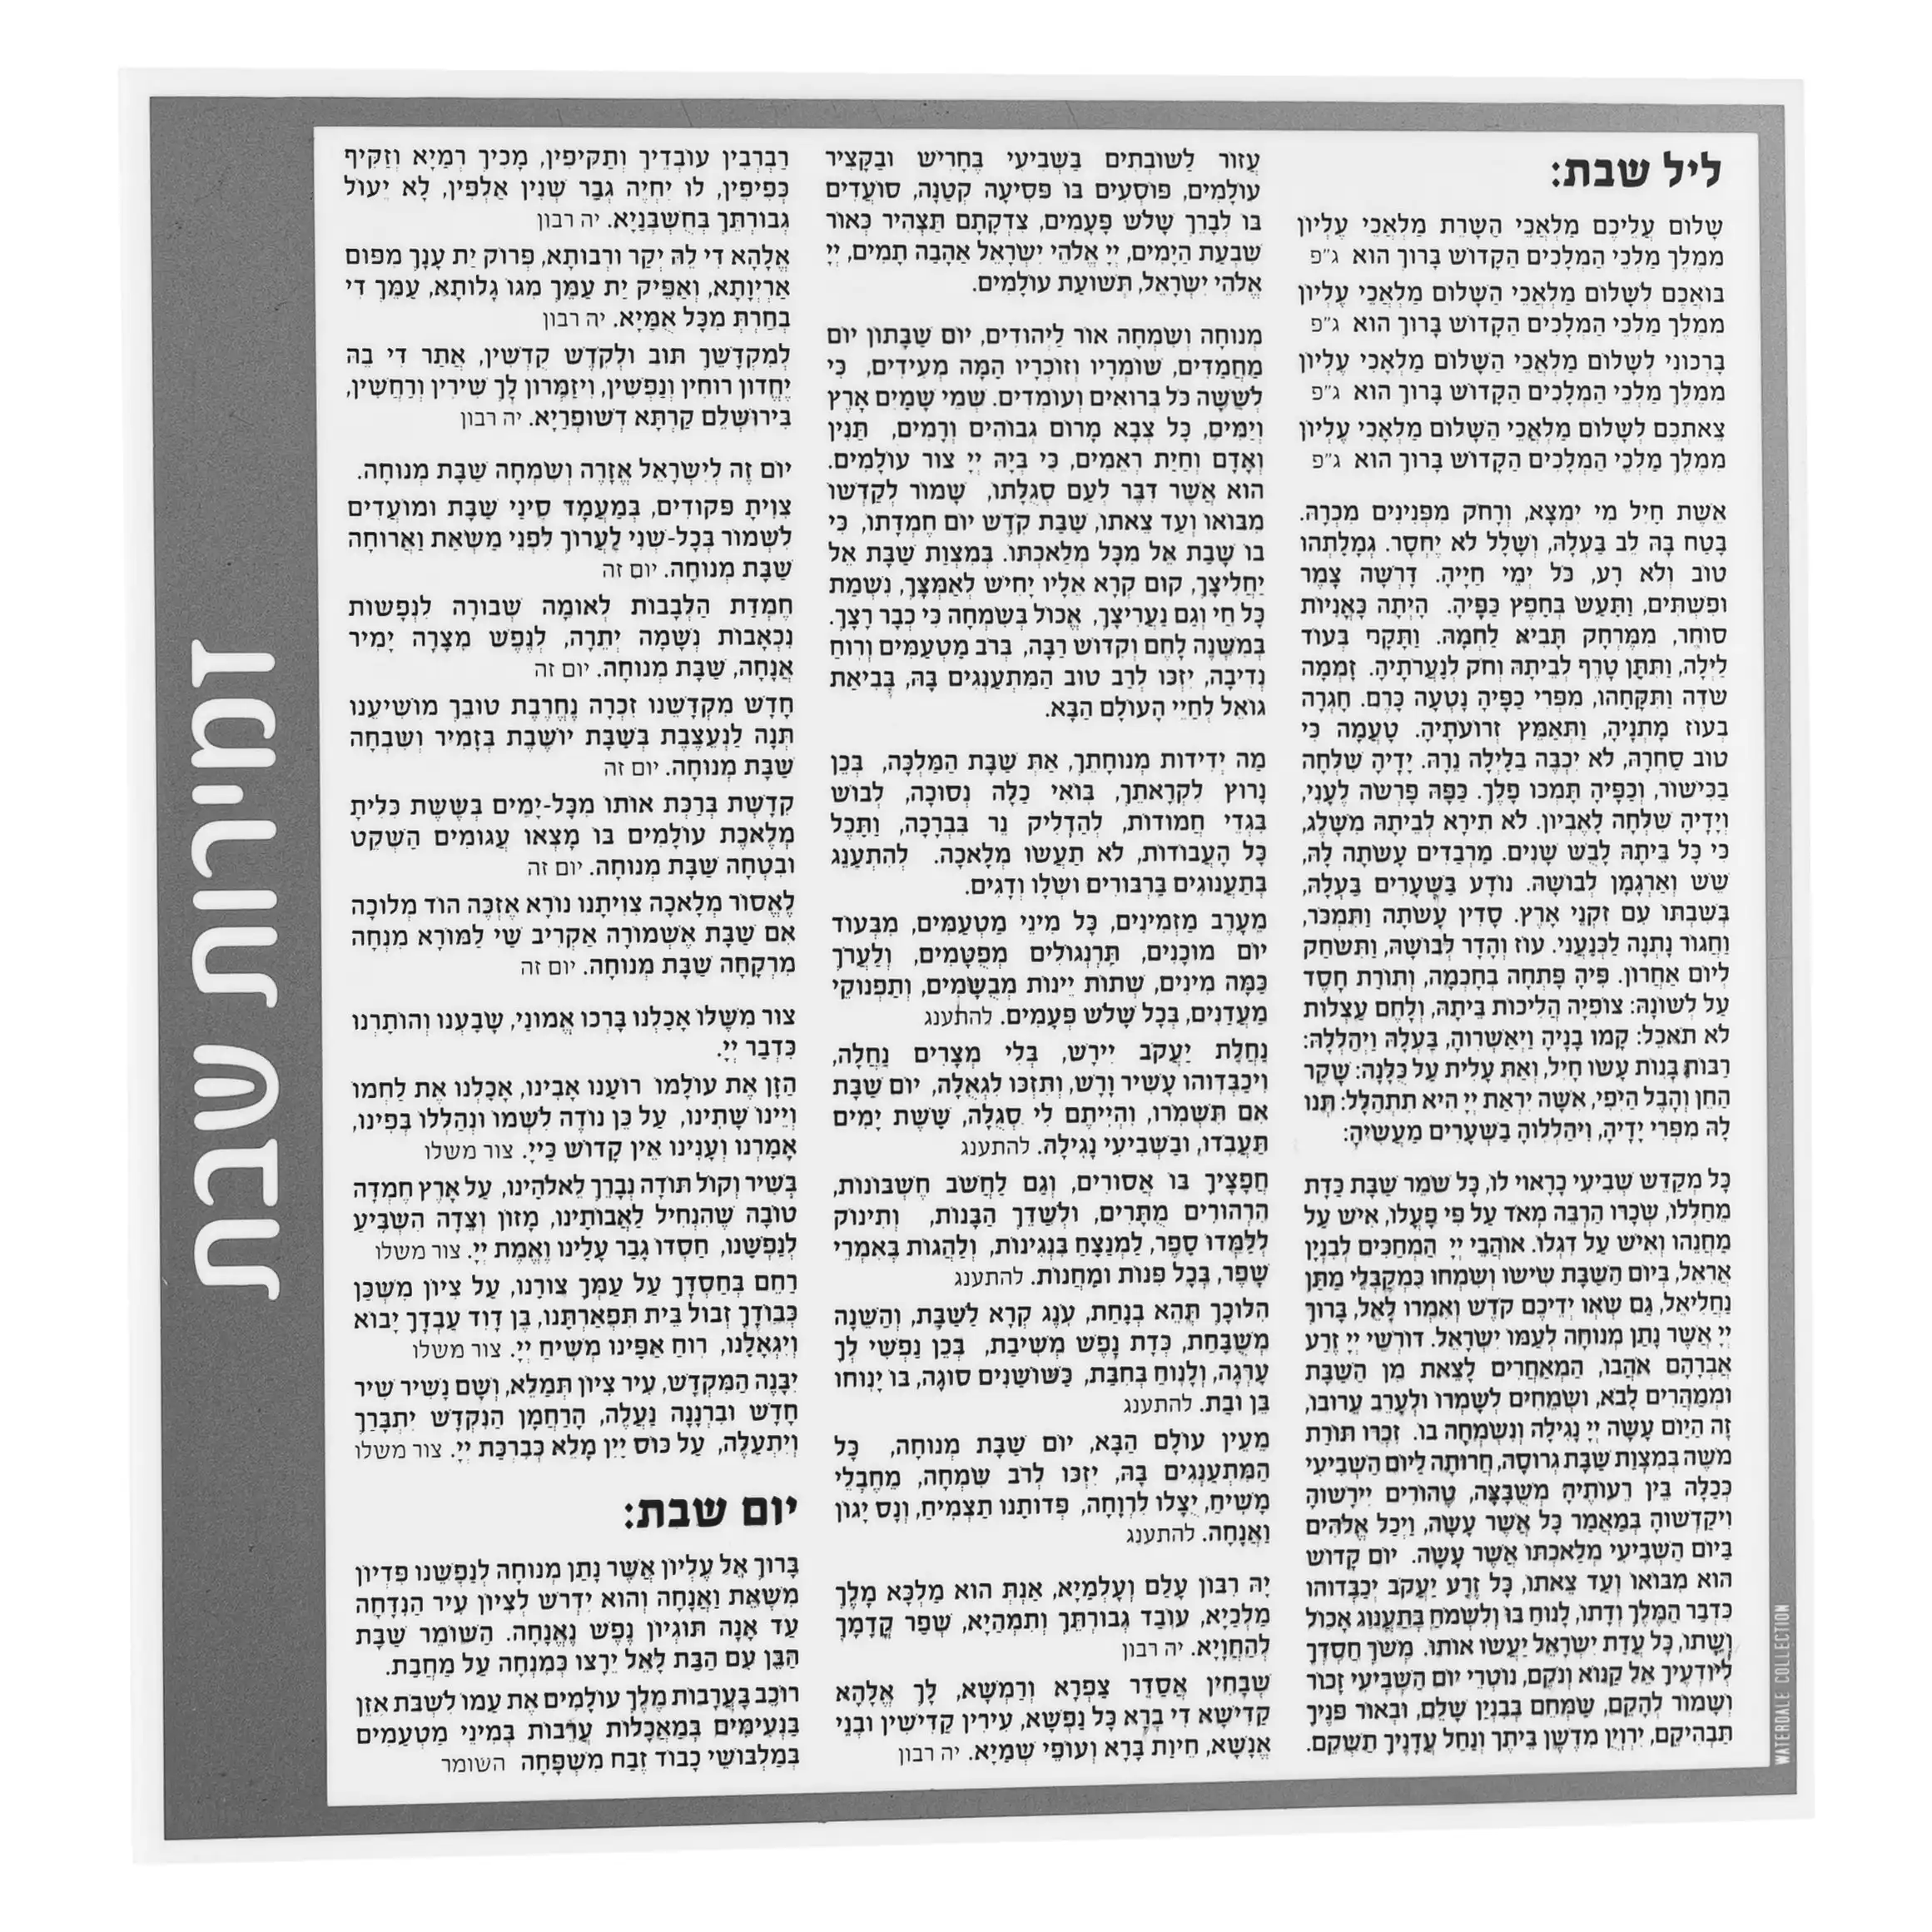 8 "x8" フロストルーサイトサイドベンチャーカードユダヤ人ベンチャーカード